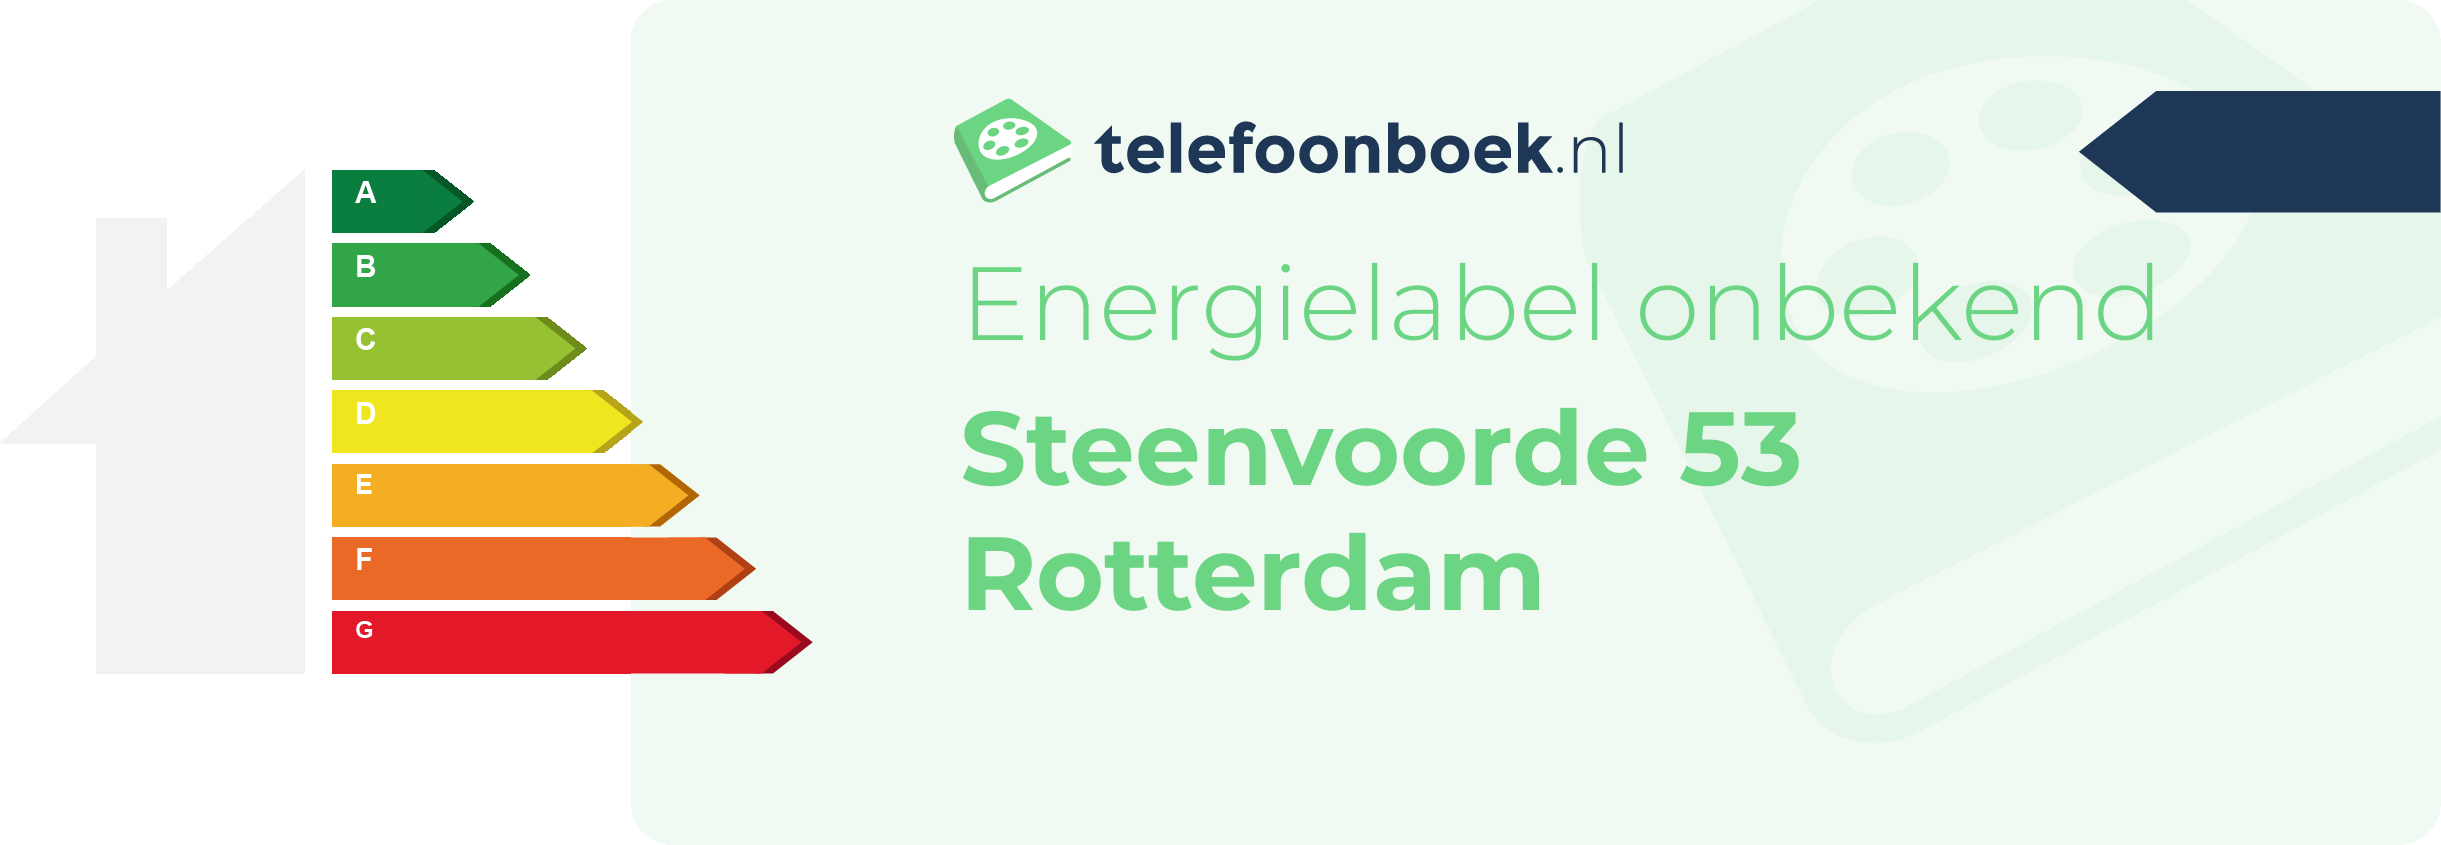 Energielabel Steenvoorde 53 Rotterdam